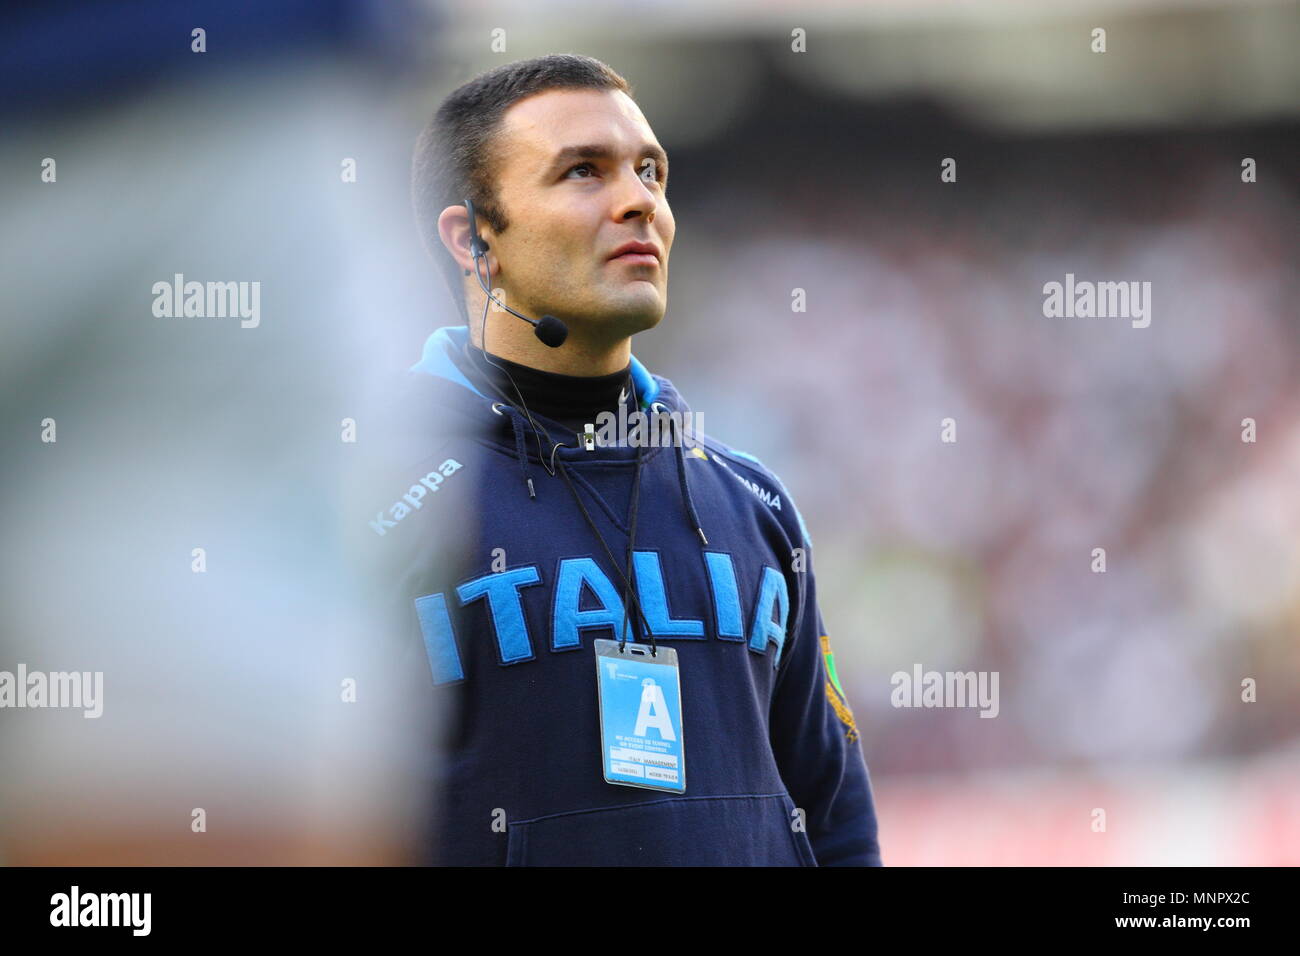 Carlo Orlandi analizza il 6 Nazioni U20 “Questa Italia U20 è un